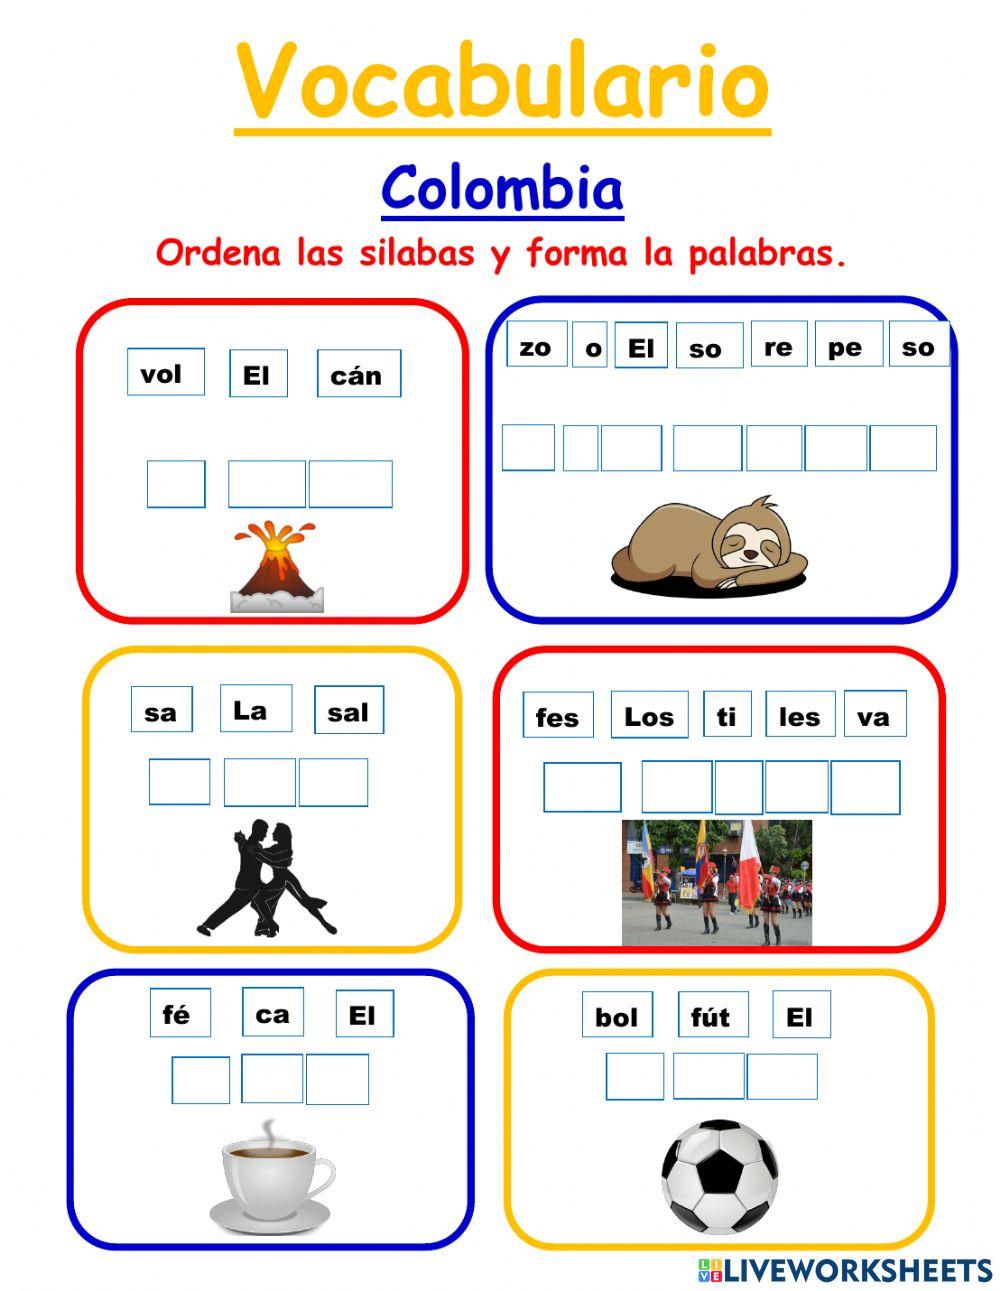 Vocabulario Colombia